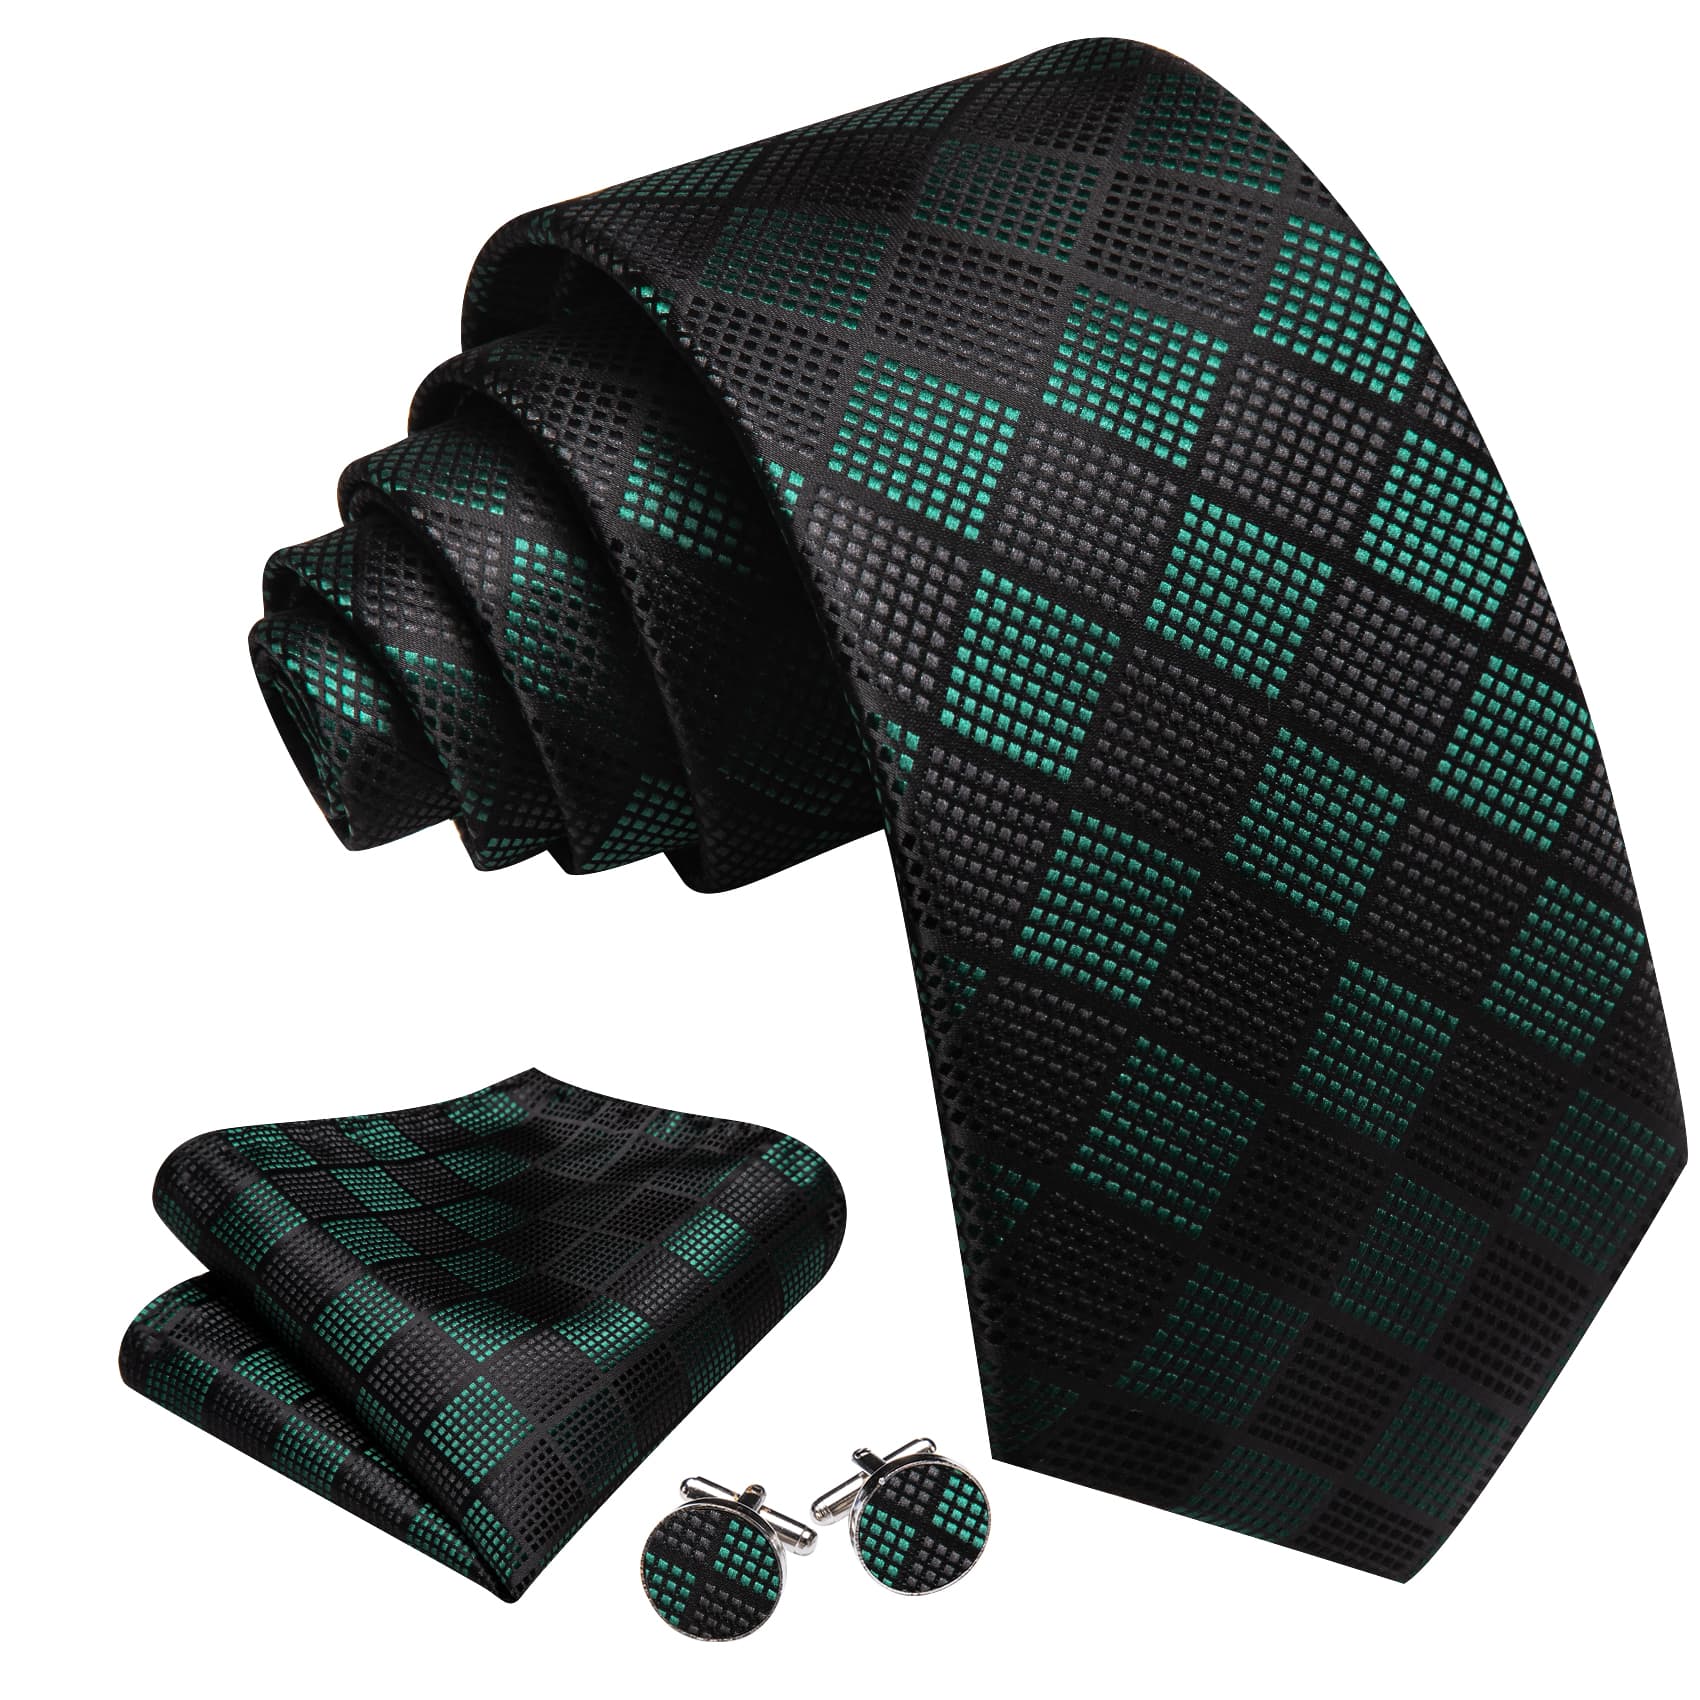  Plaid Tie Black Green Checkered Necktie and Cufflink Set